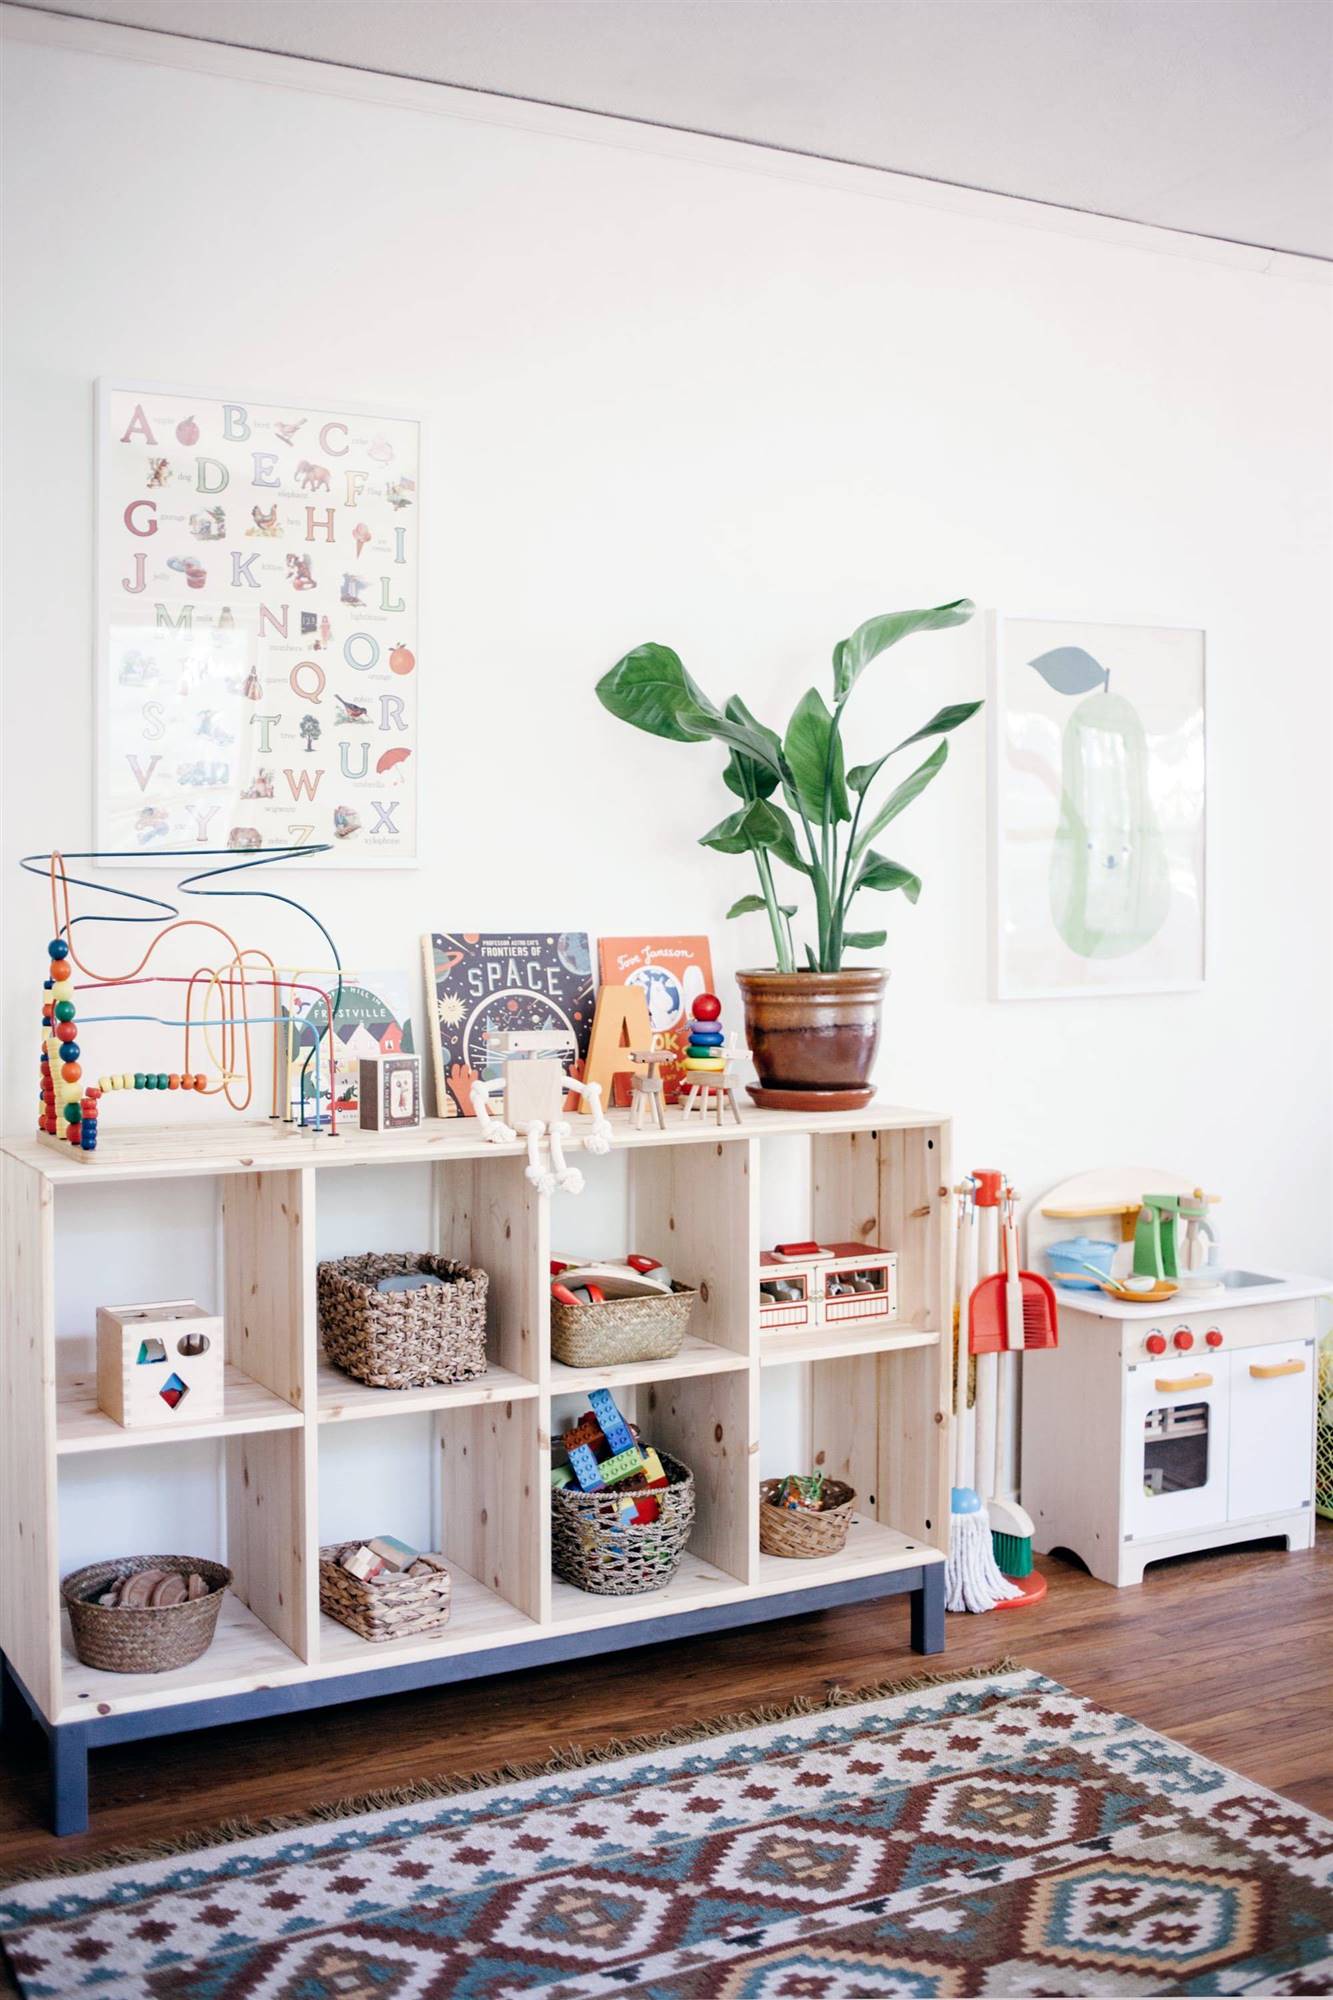 Zona de juegos infantil decorada con el método Montessori con una estantería abierta y una planta